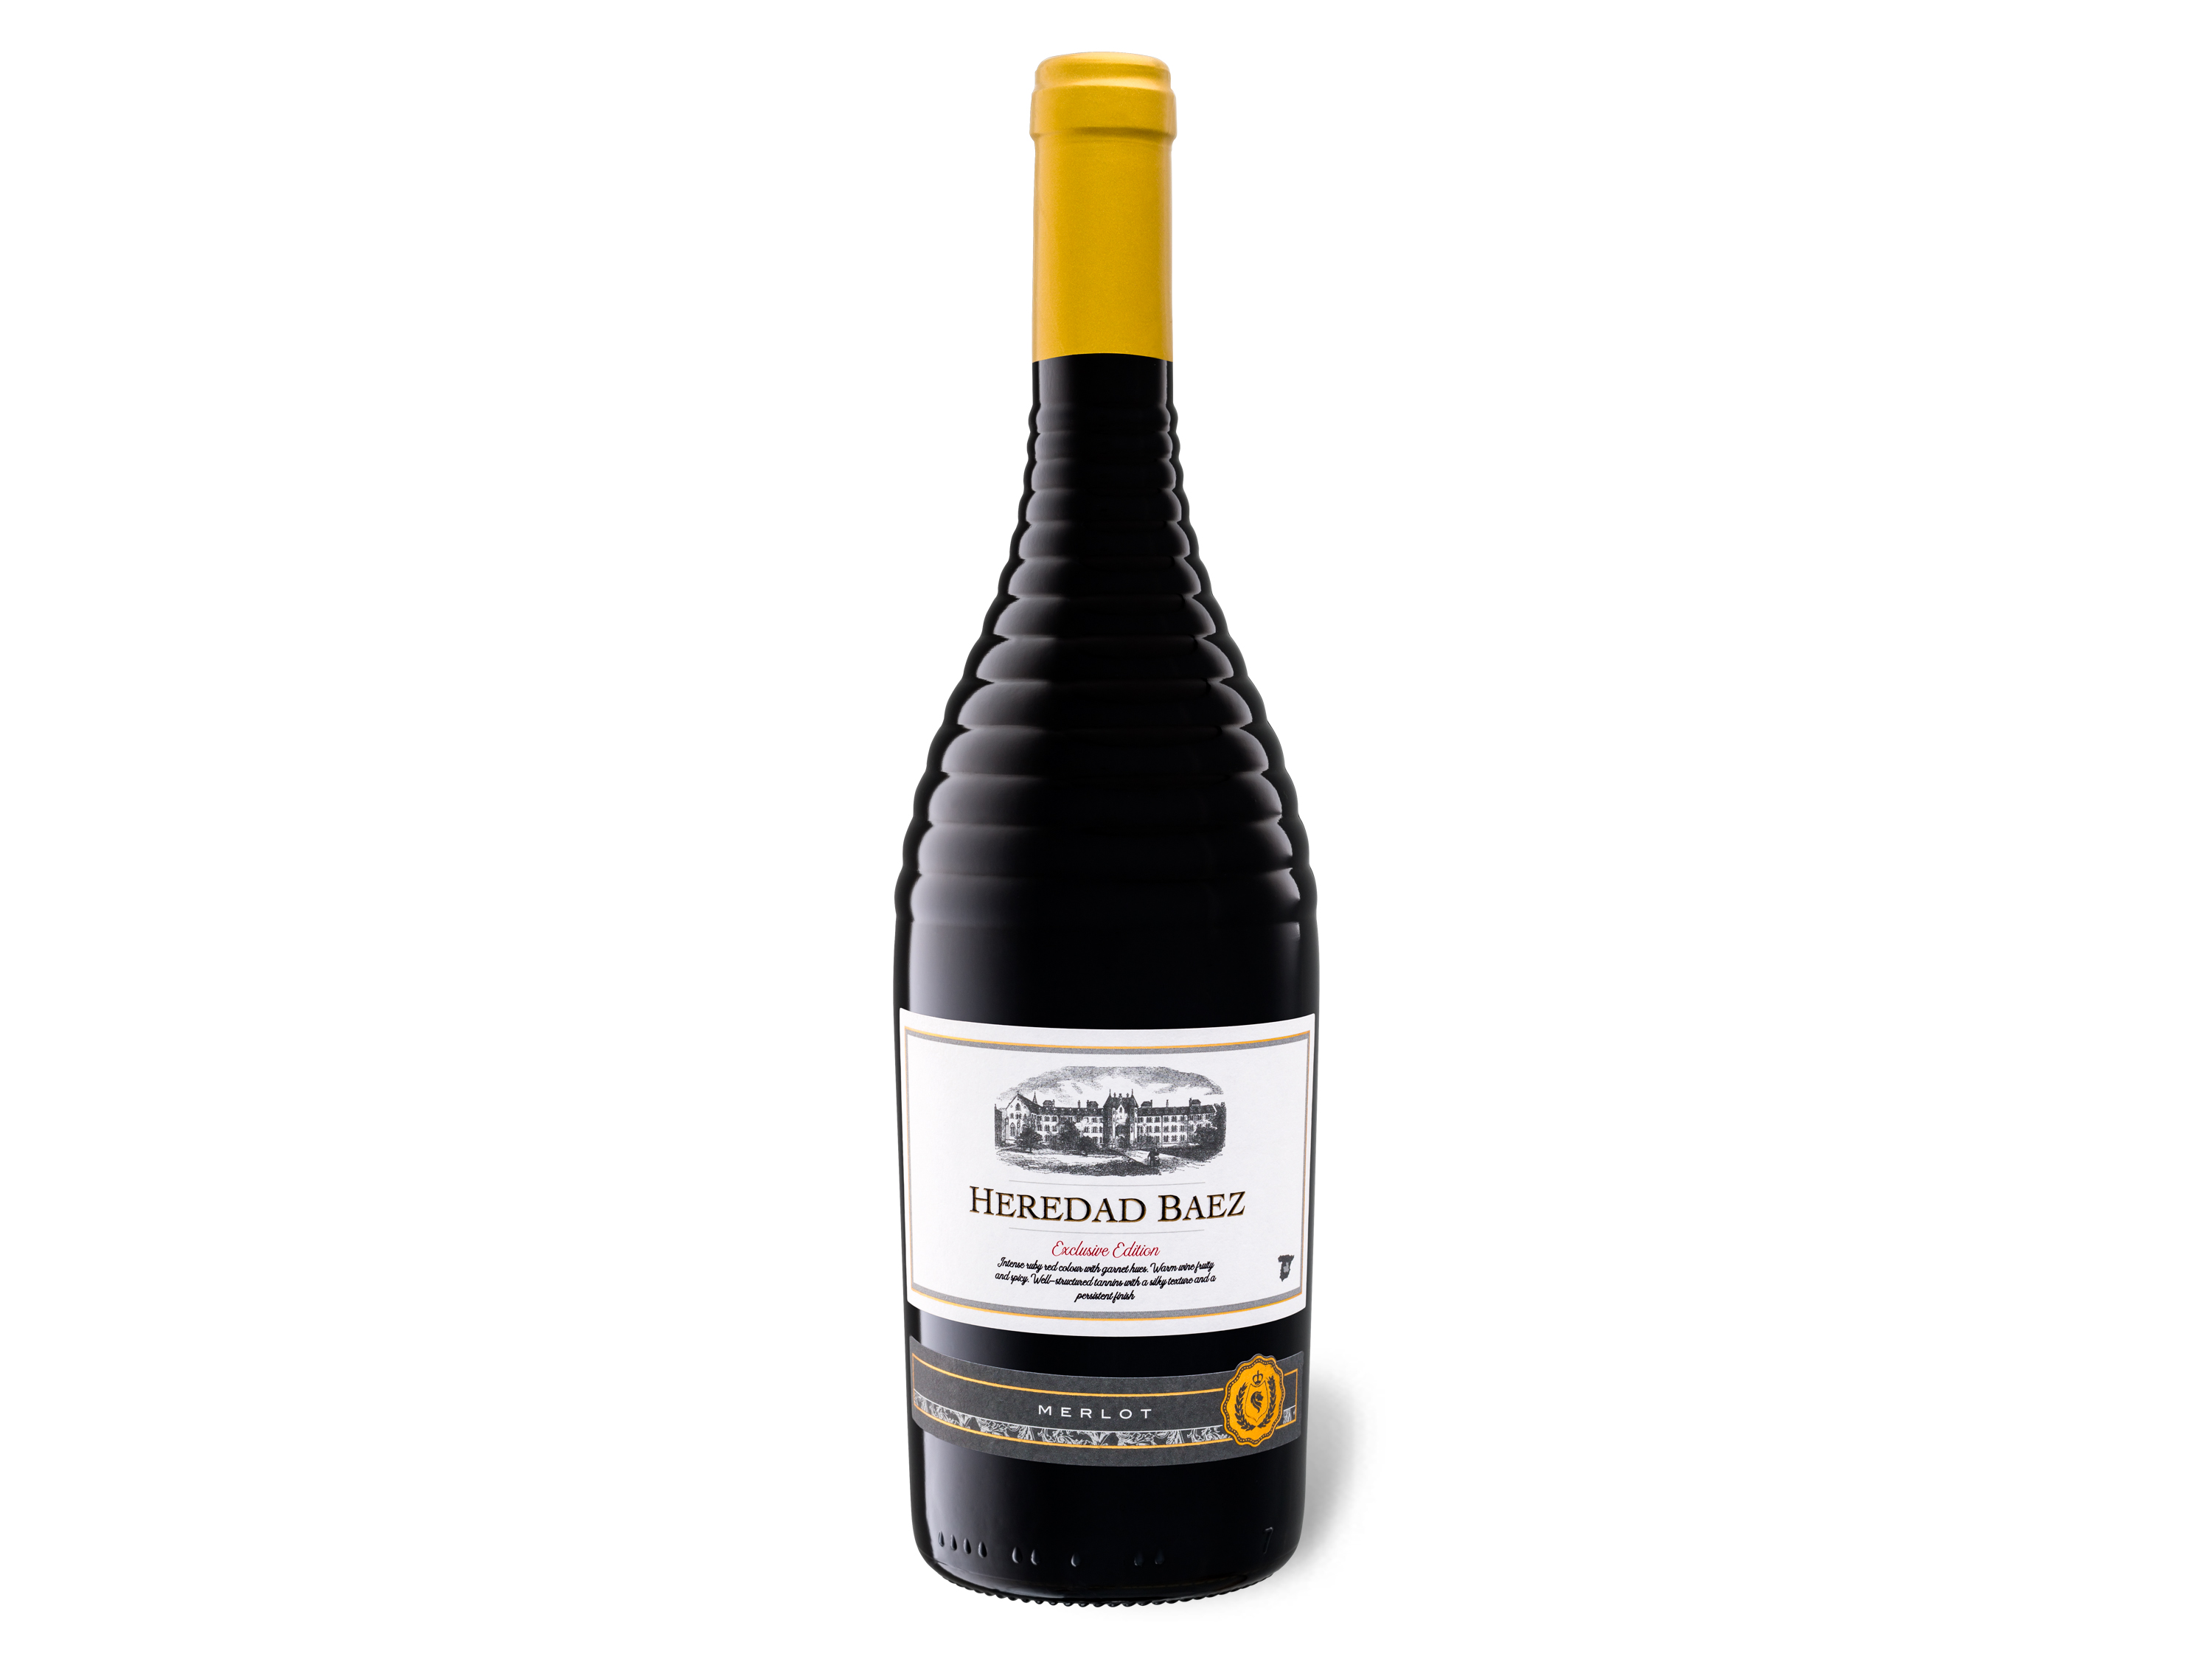 Heredad Baez Exclusive Edition Vino de la Tierre de Castilla IGP trocken, Rotwein 2019 Wein & Spirituosen Lidl DE